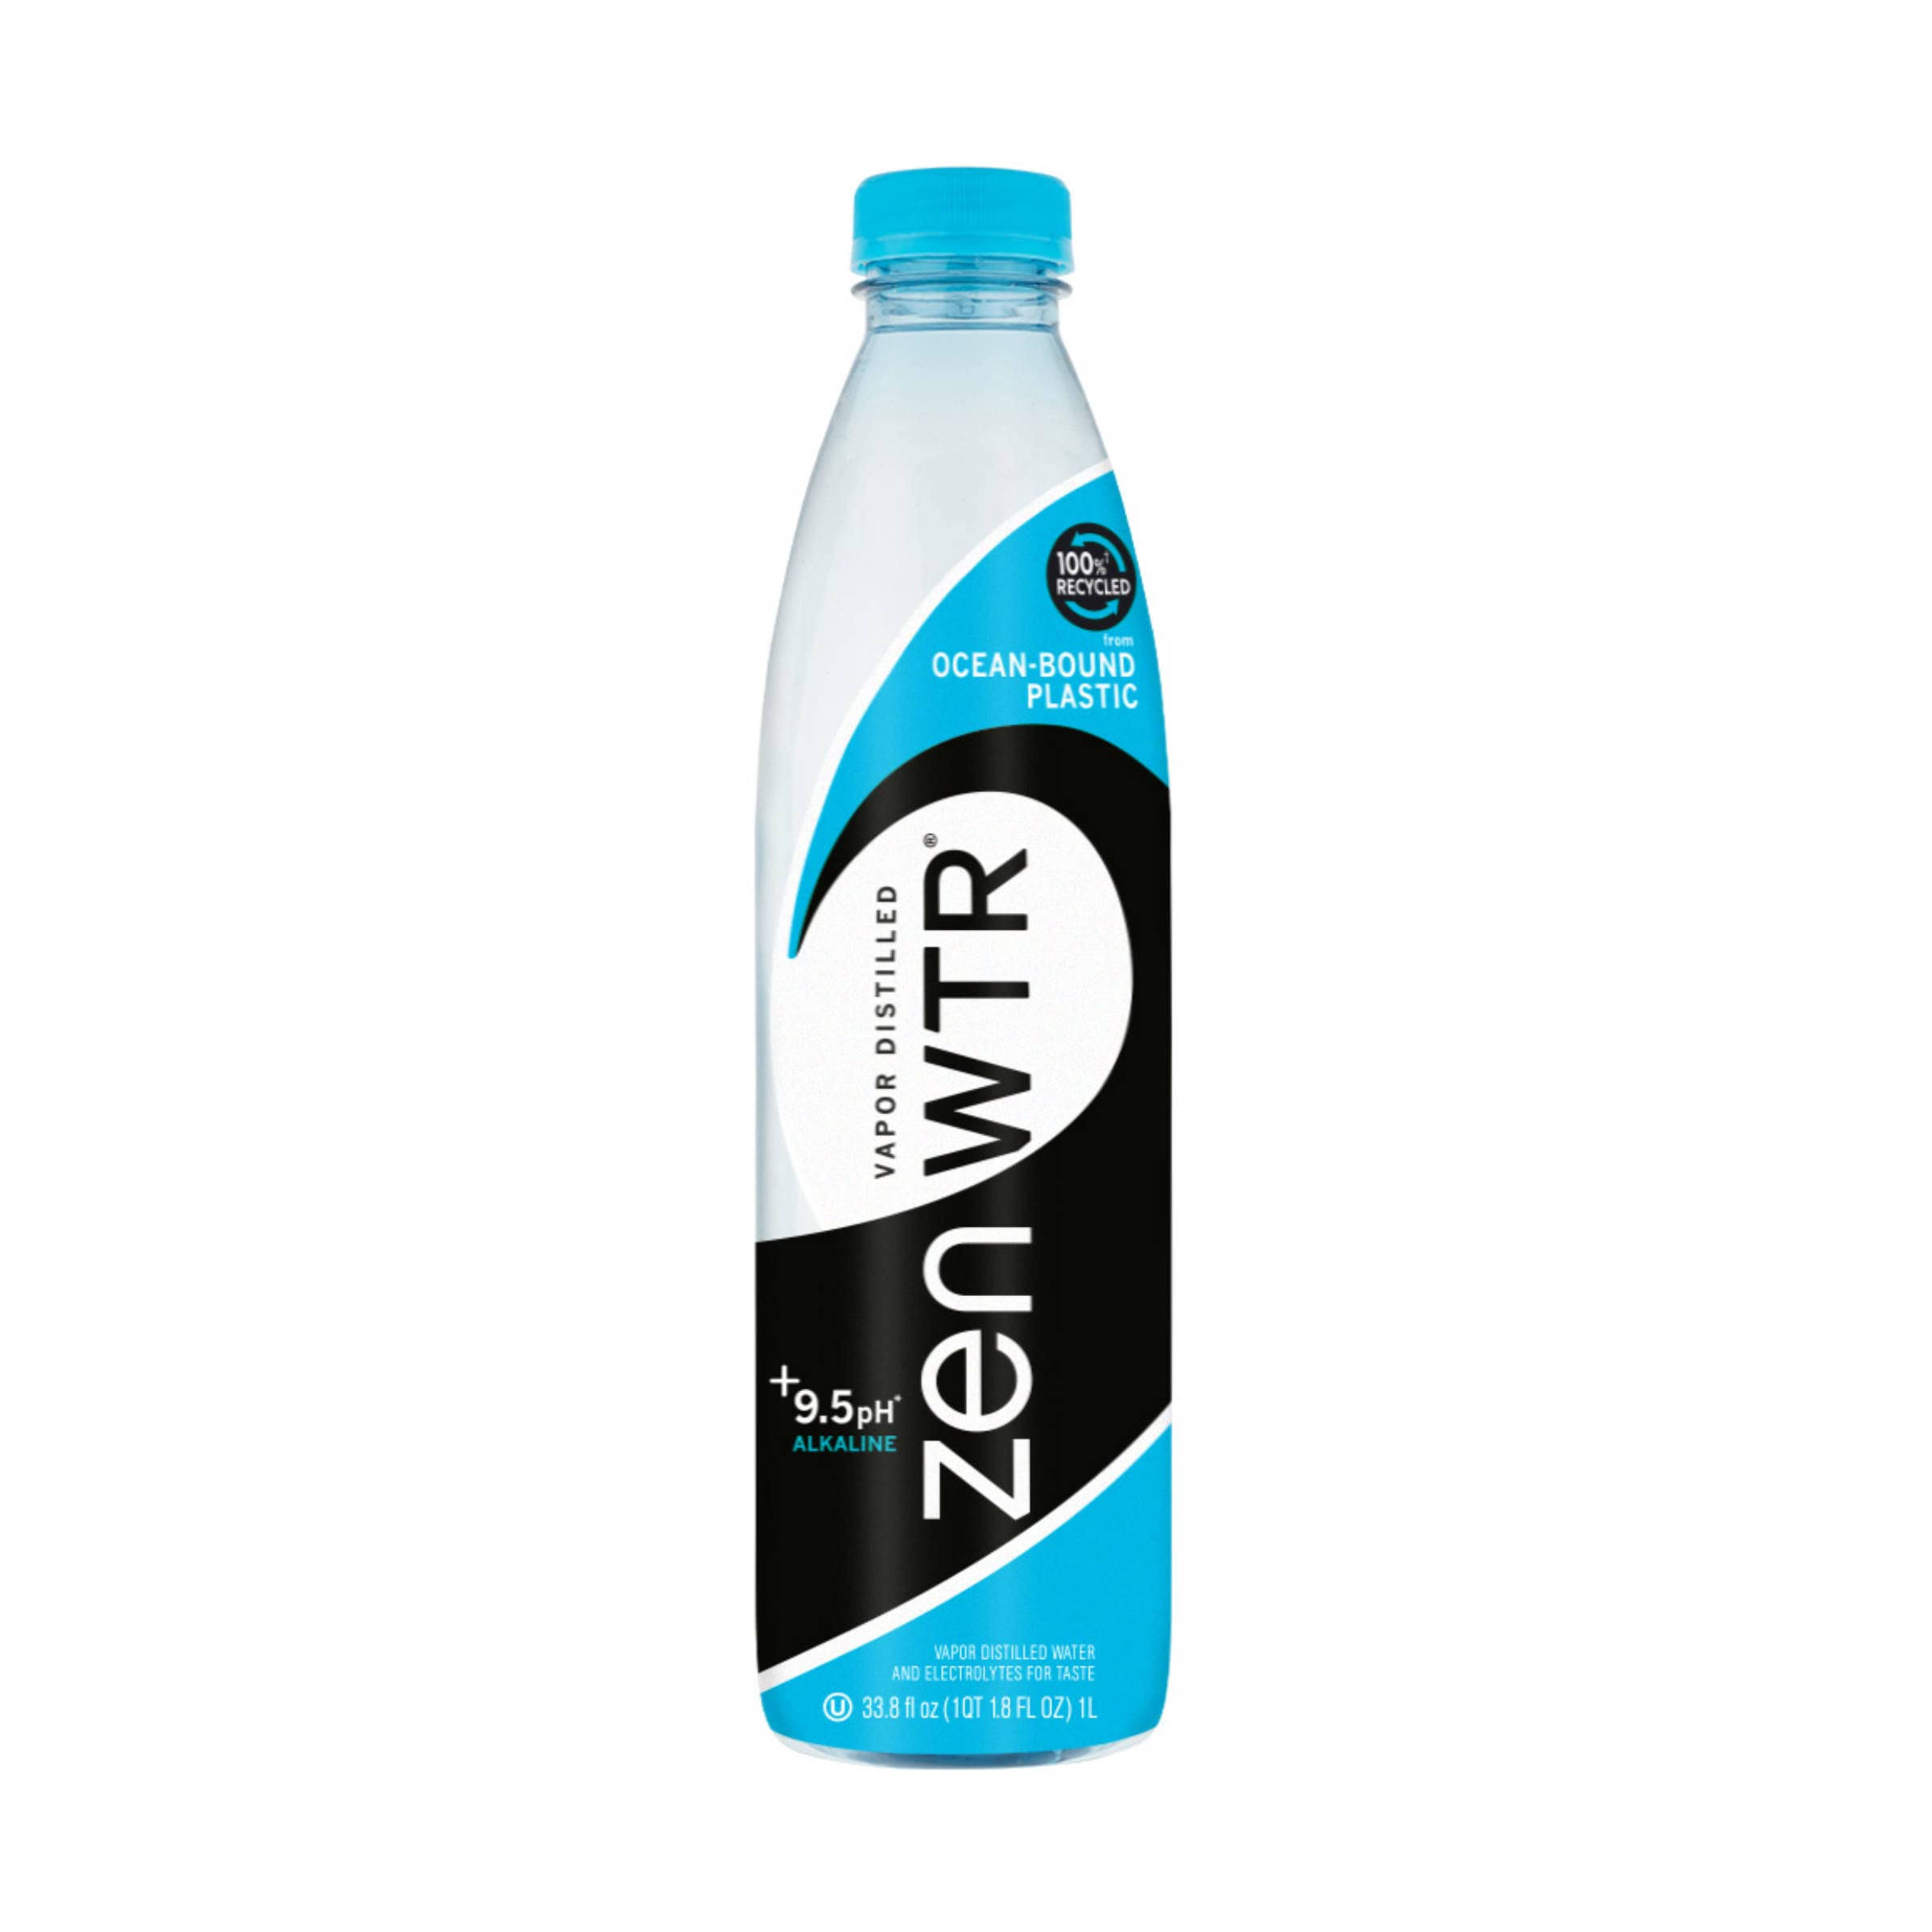 Zen Wtr Alkaline Water, Vapor Distilled, 9.5 pH - 33.8 fl oz